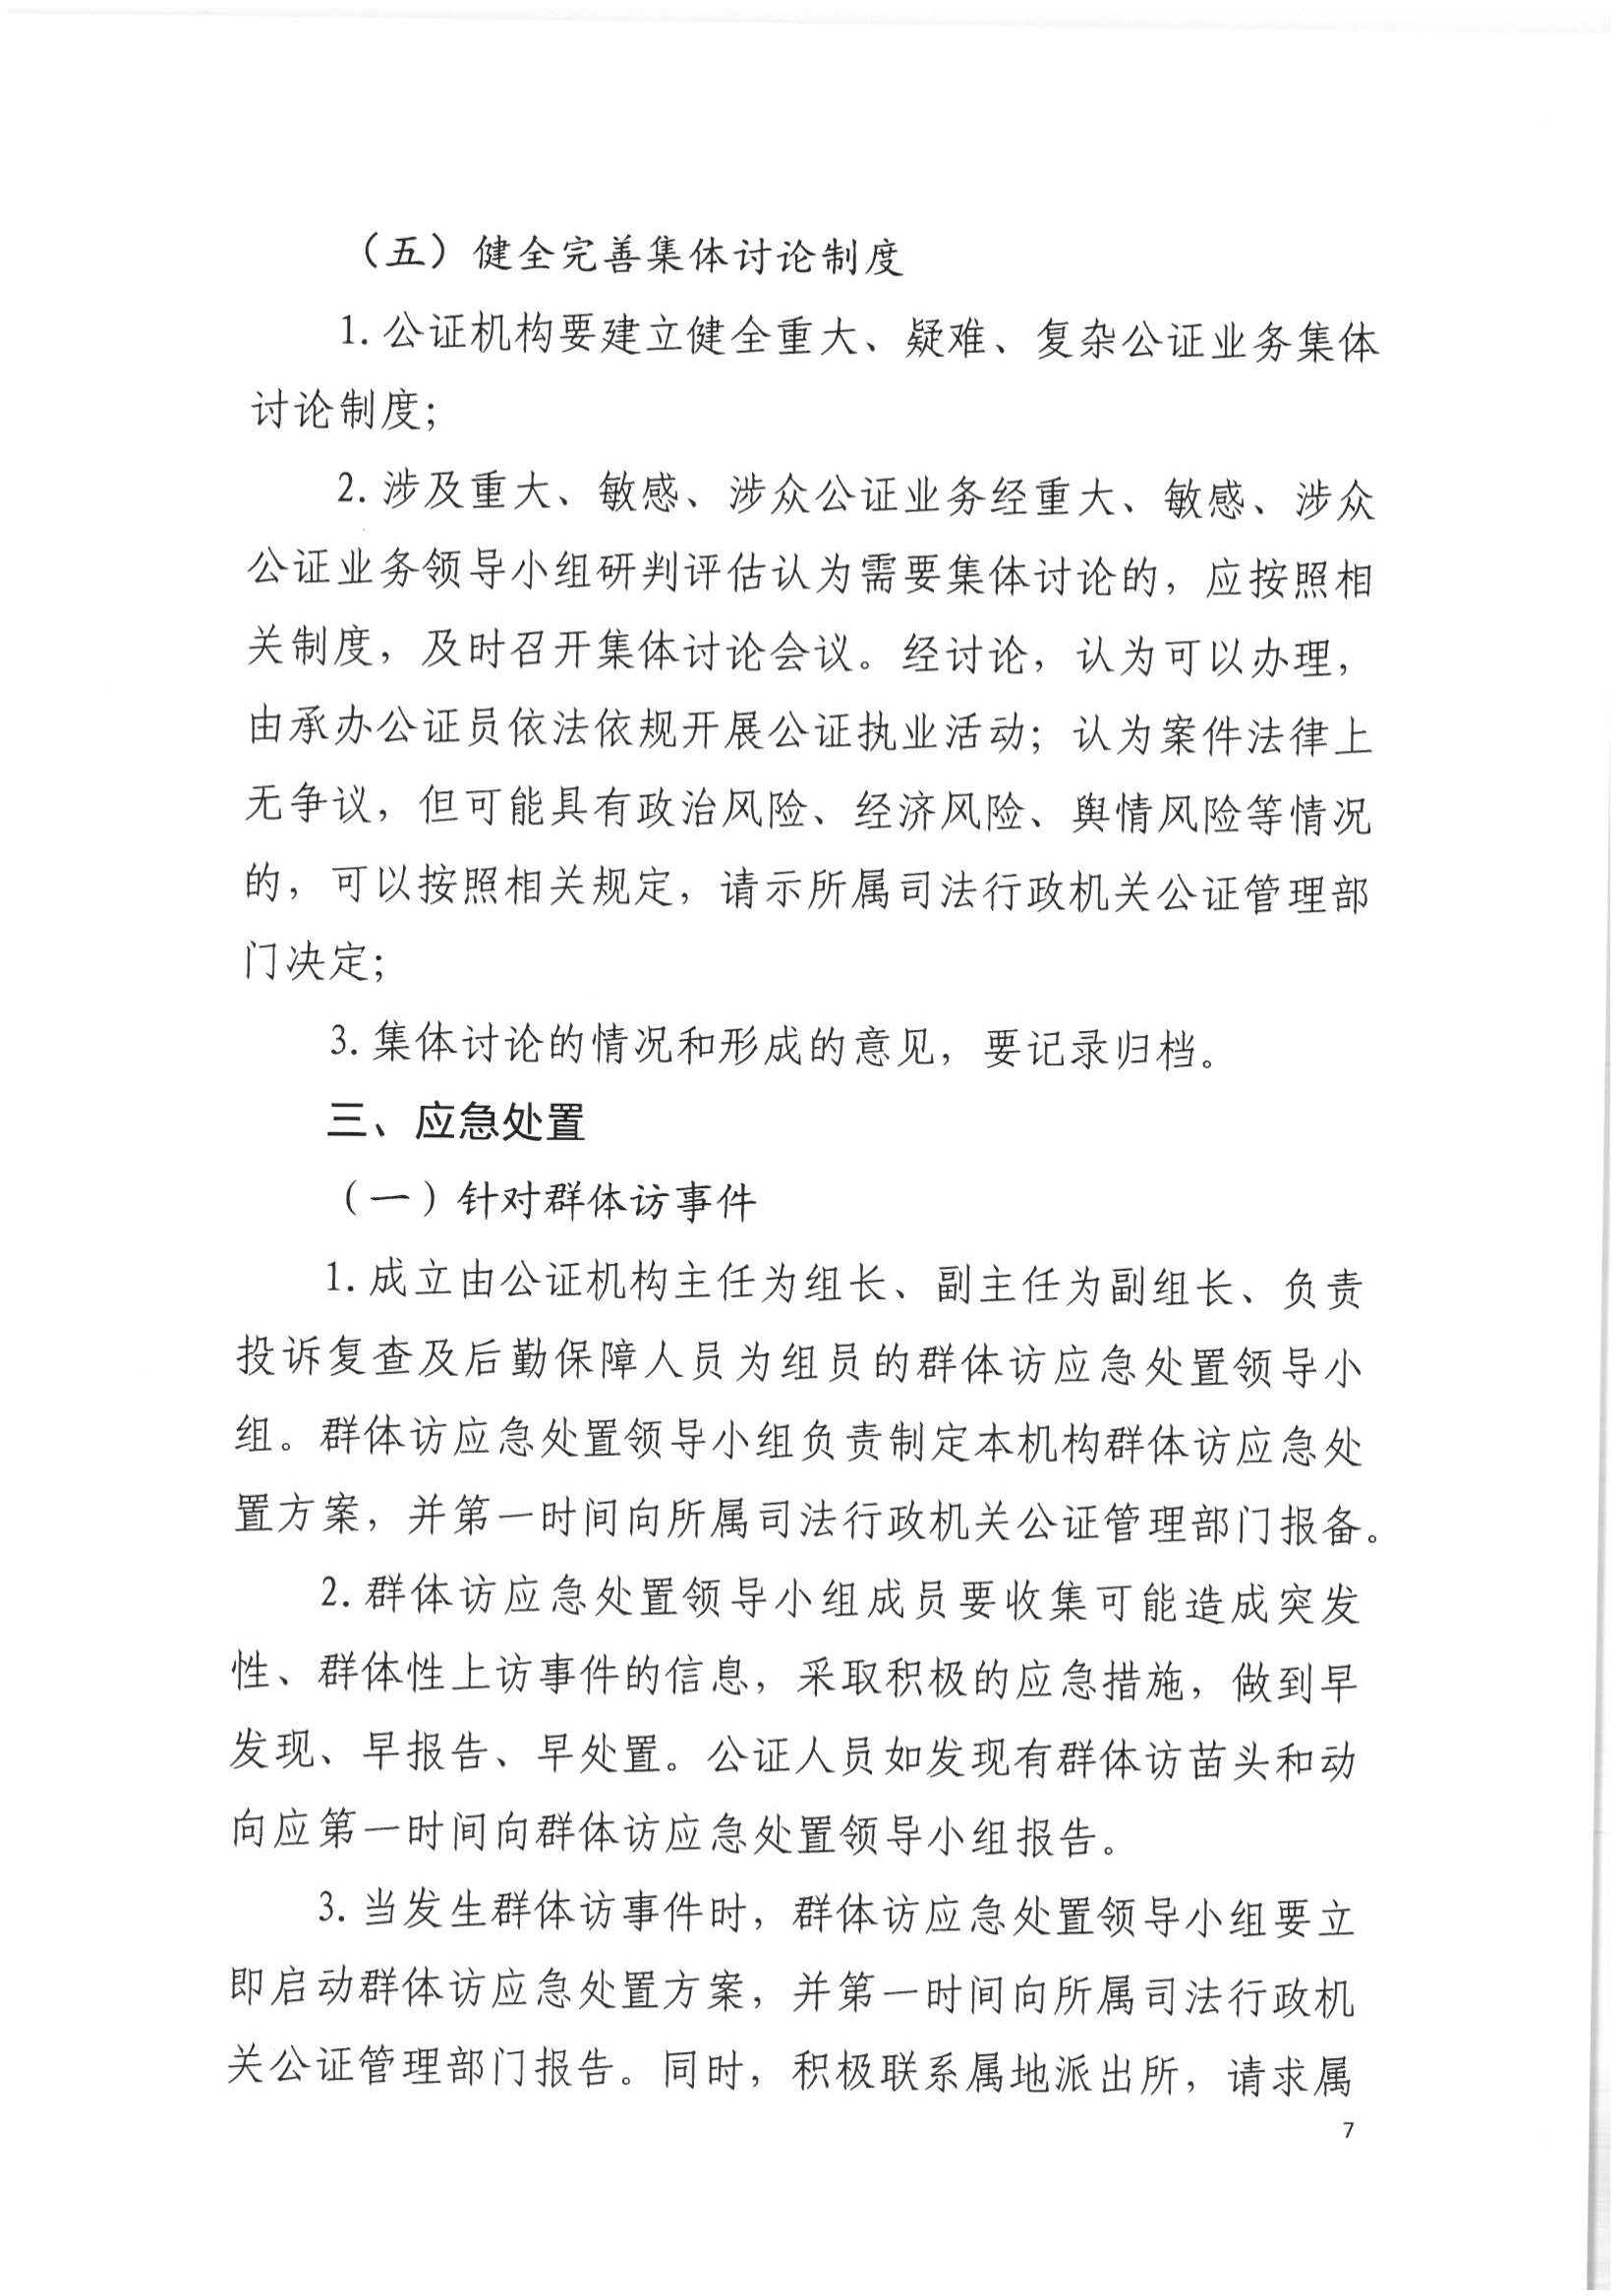 2北京市公证协会关于印发《北京市公证协会关于办理重大、敏感、涉众公证业务的工作指引》的通知(1)_06